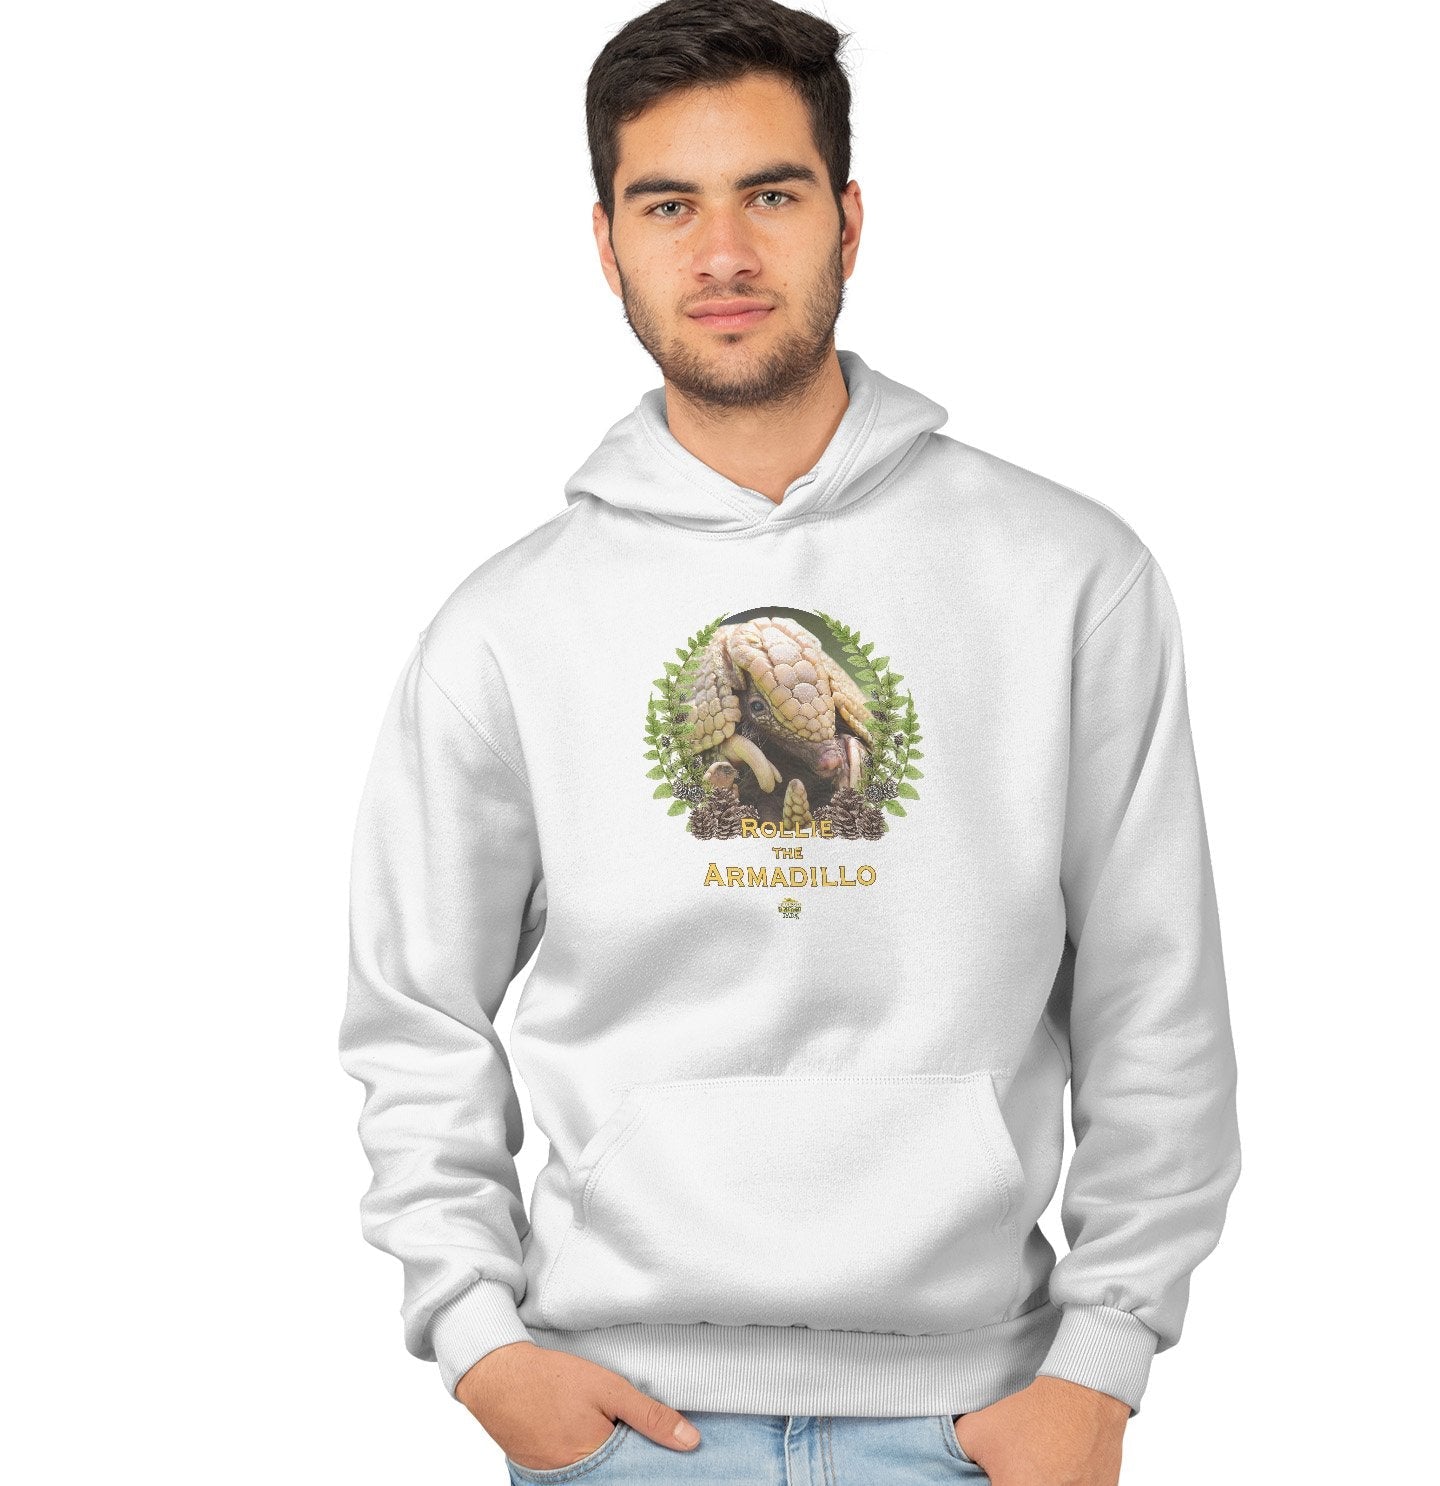 Rollie the Armadillo - Adult Unisex Hoodie Sweatshirt